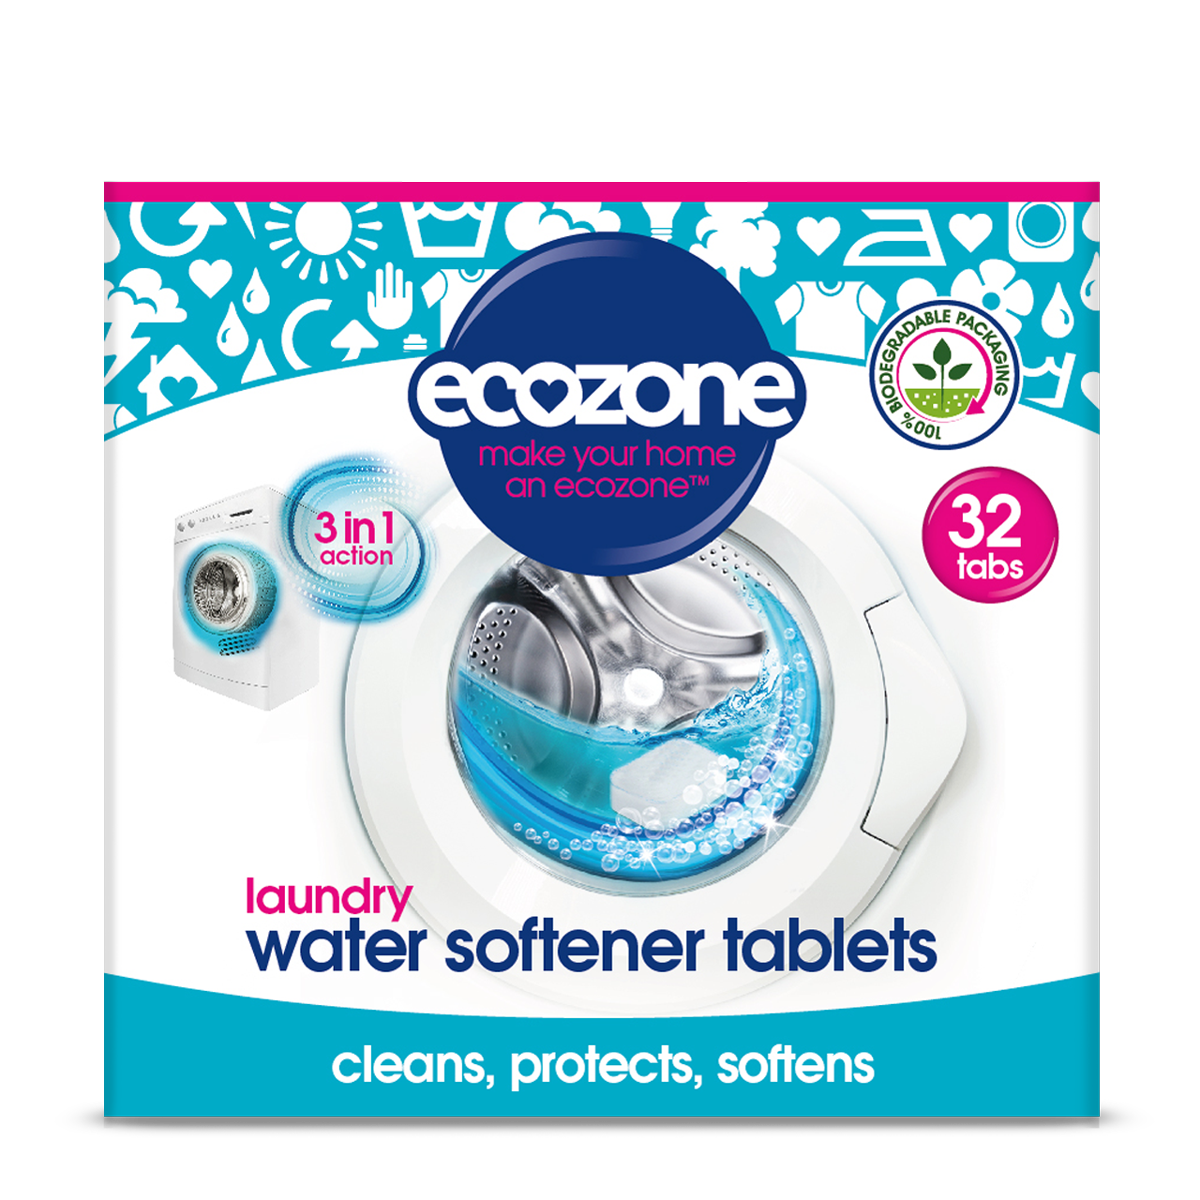 Tablety na změkčení vody 32ks Ecozone